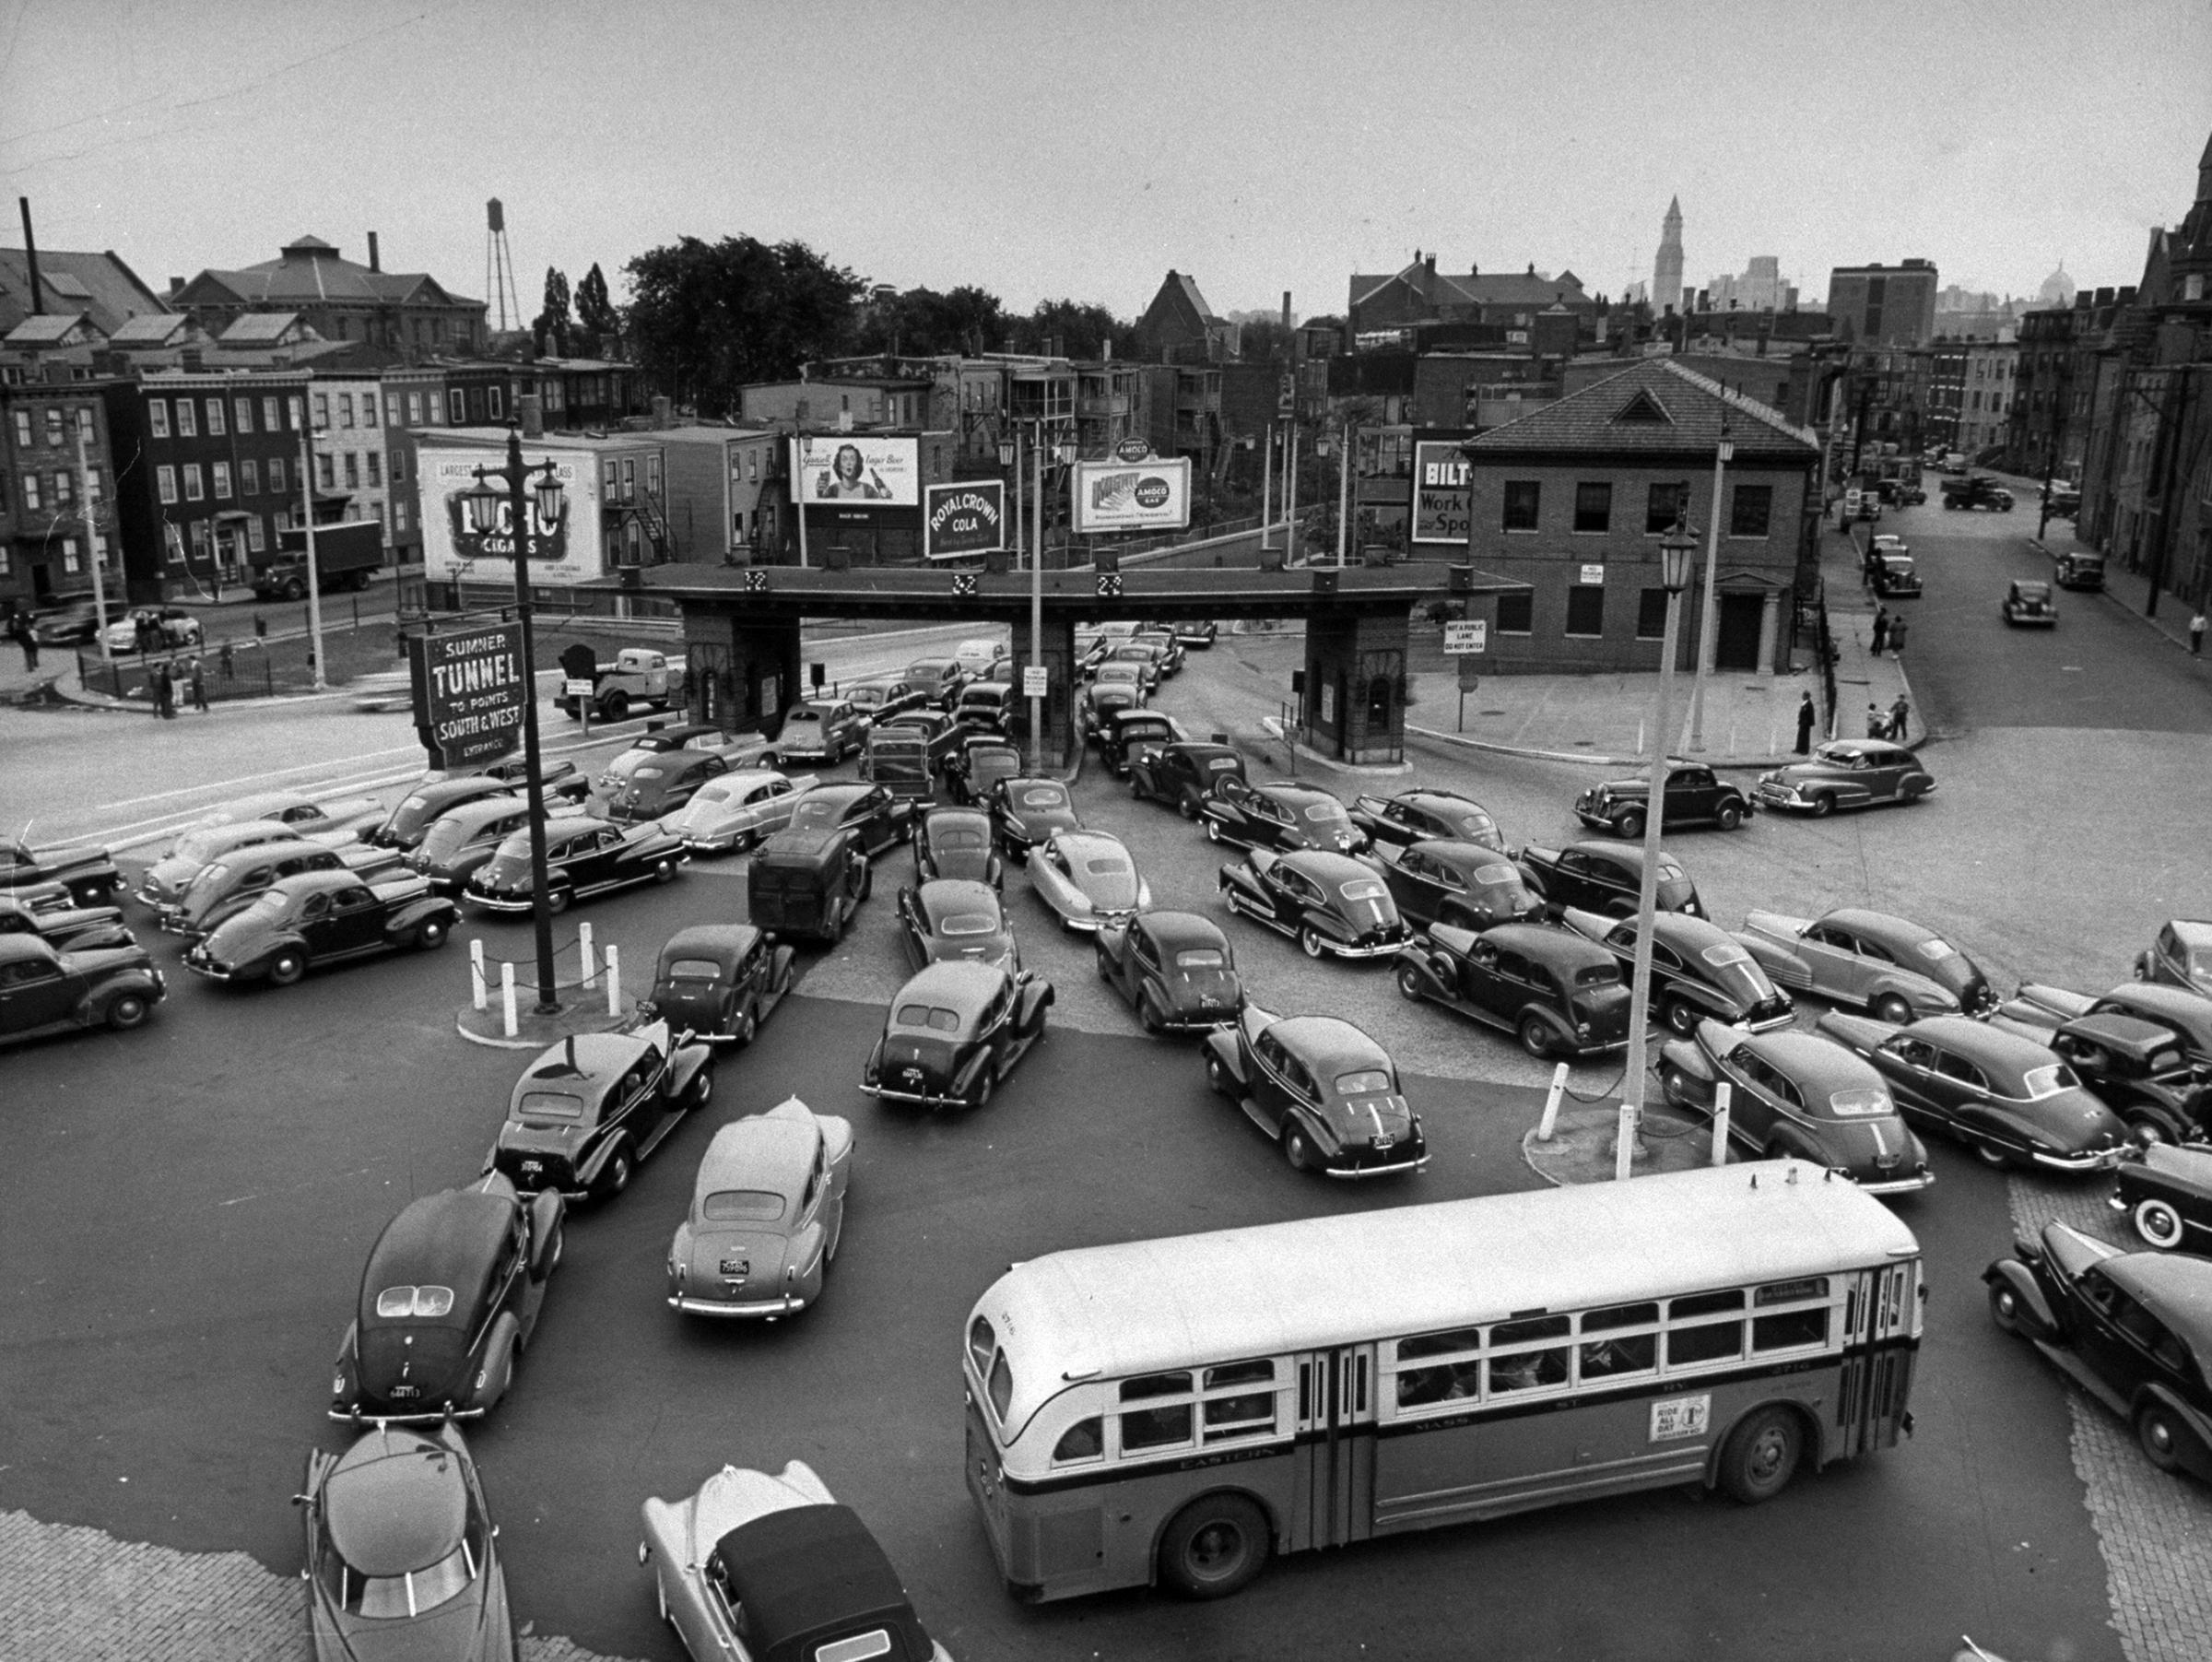 Traffic jams on Memorial Day weekend in 1949.